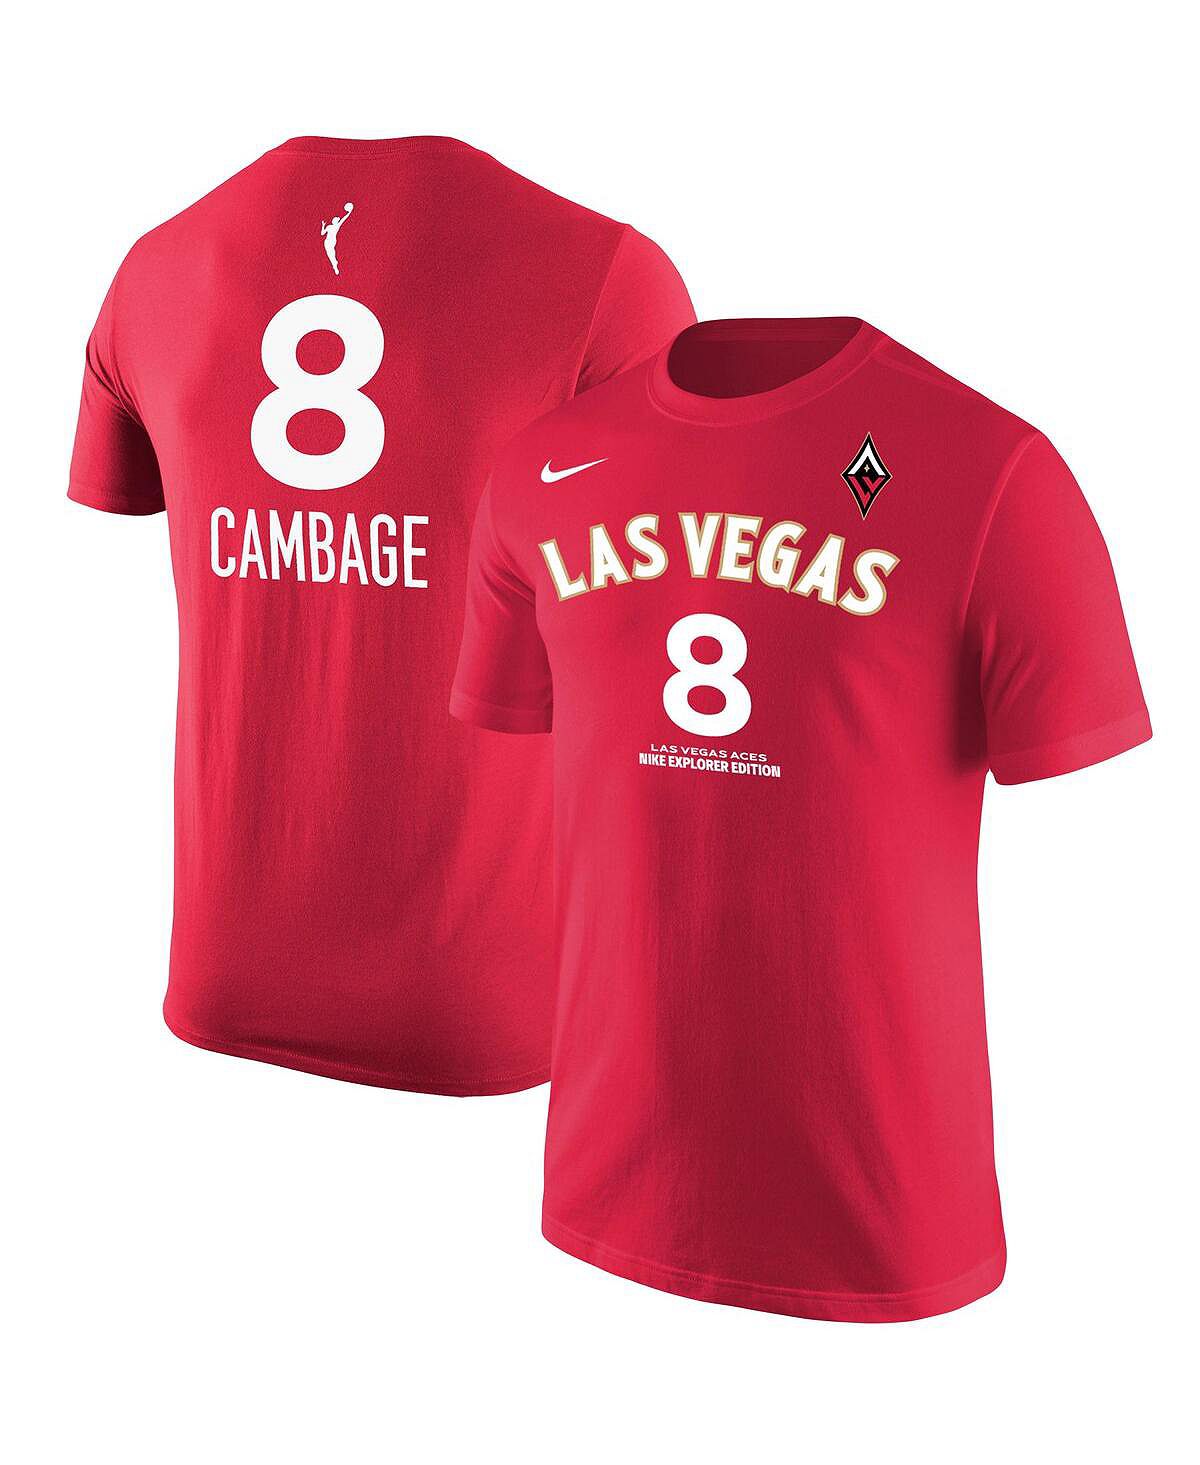 Мужская красная футболка Liz Cambage Las Vegas Aces Explorer Edition с именем и номером Nike moore liz heft